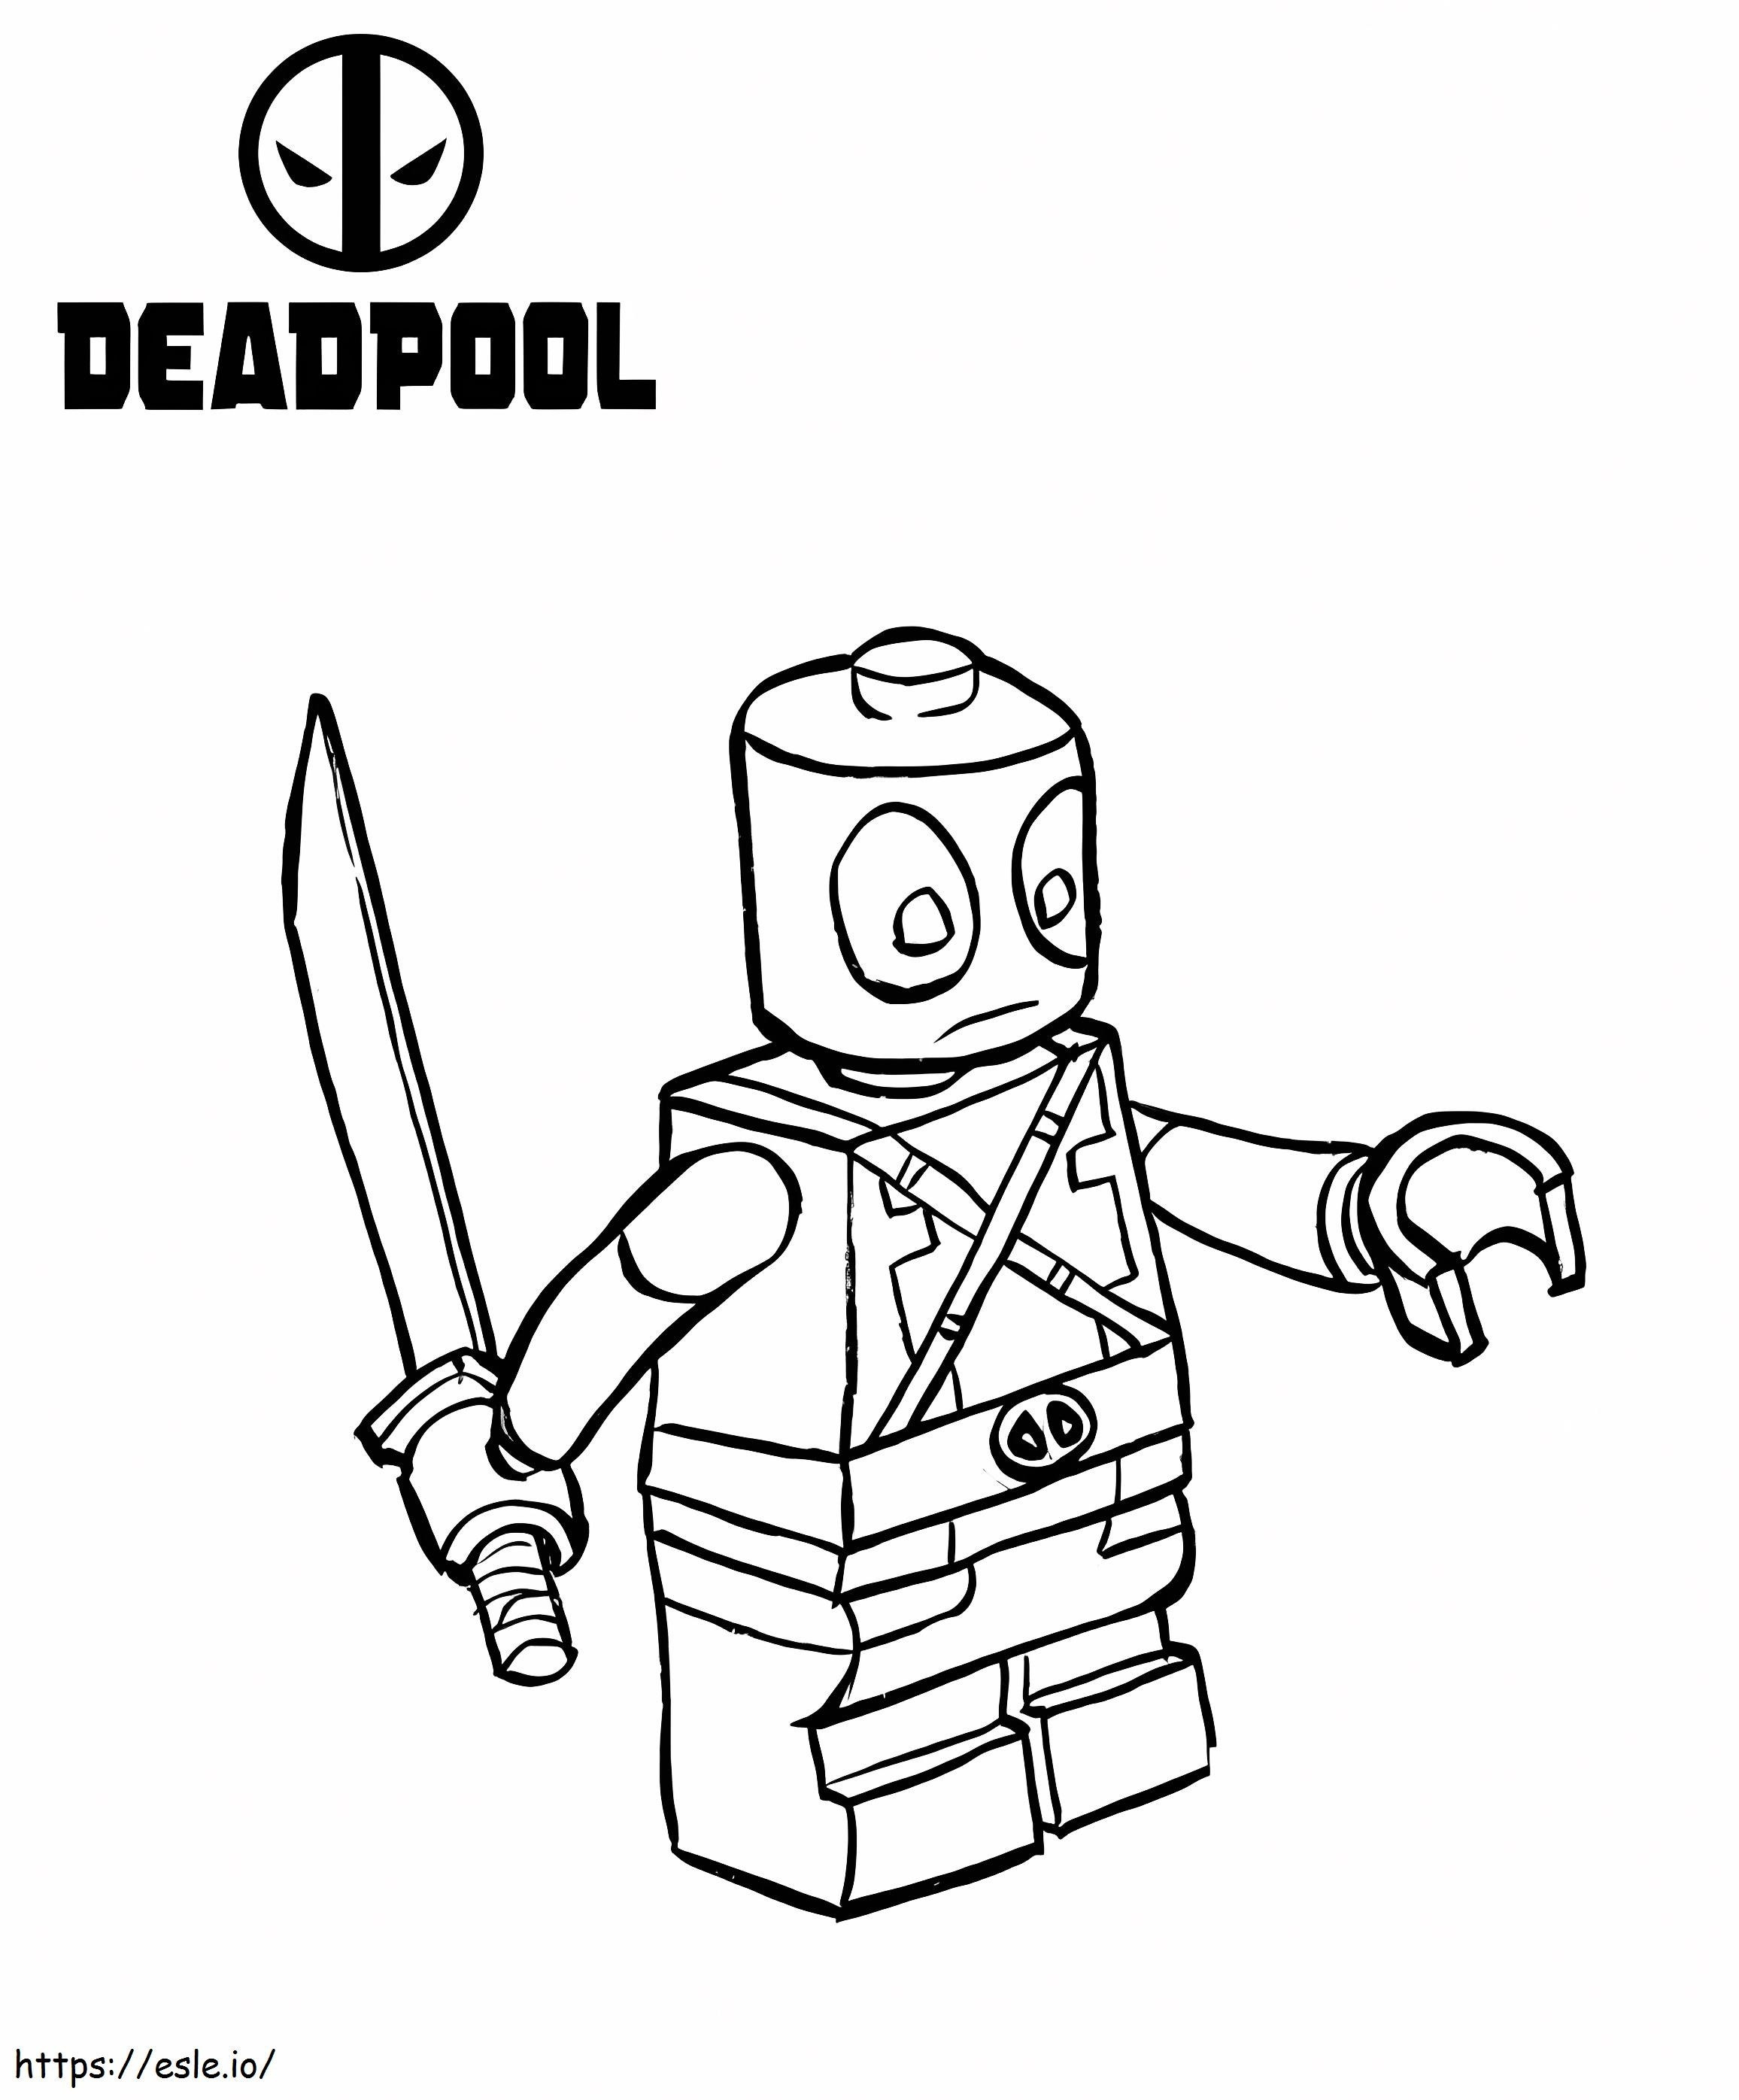 Divertente Lego Deadpool da colorare